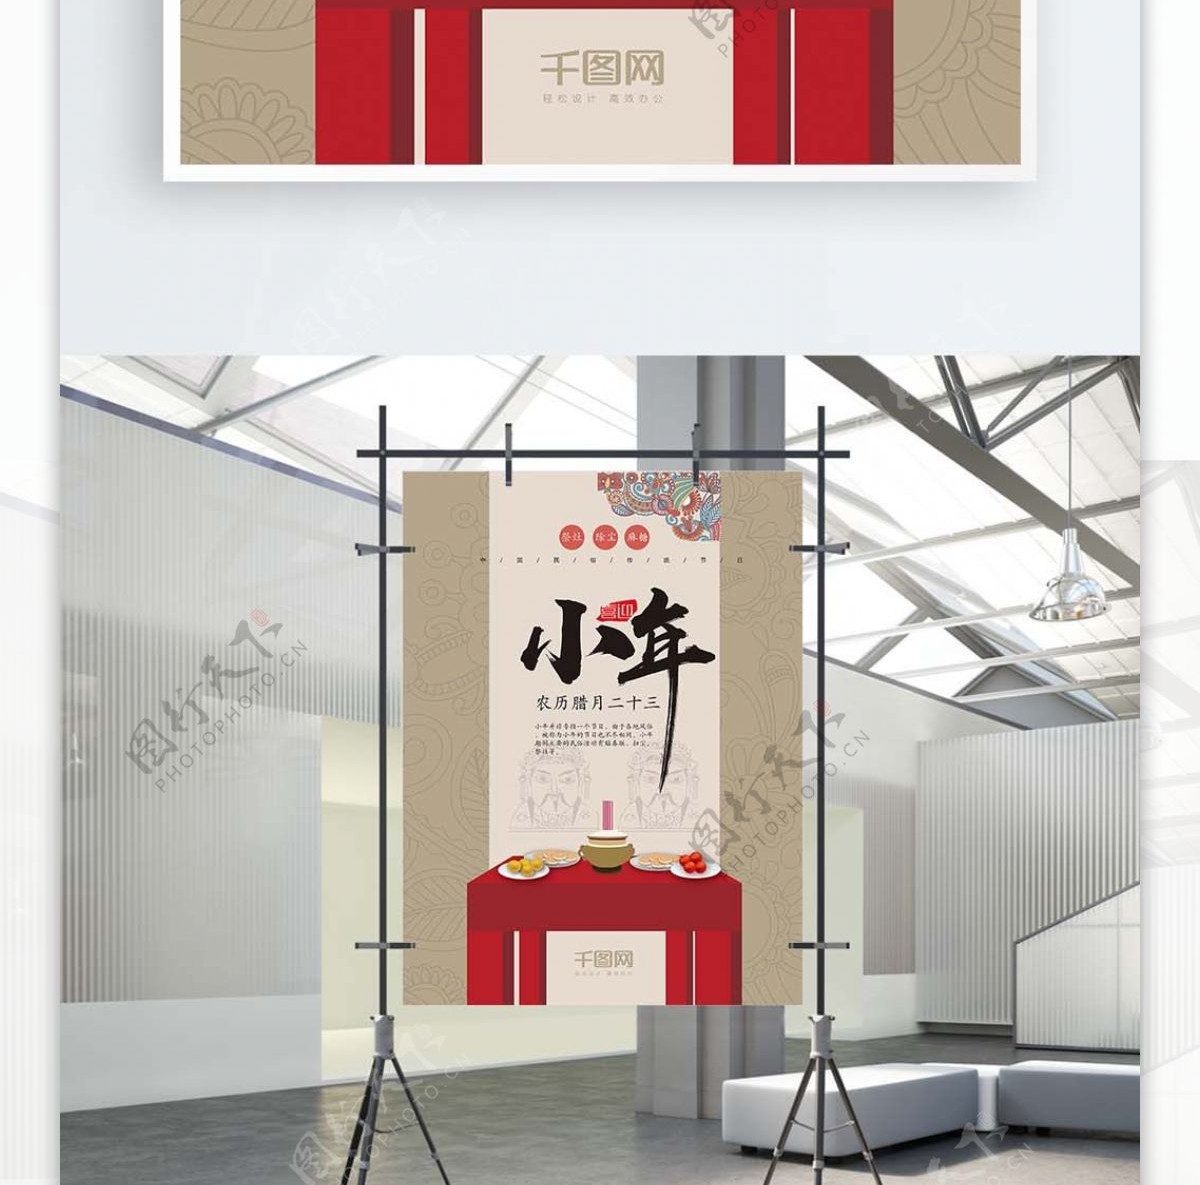 中国传统节日中国风祭灶小年海报设计